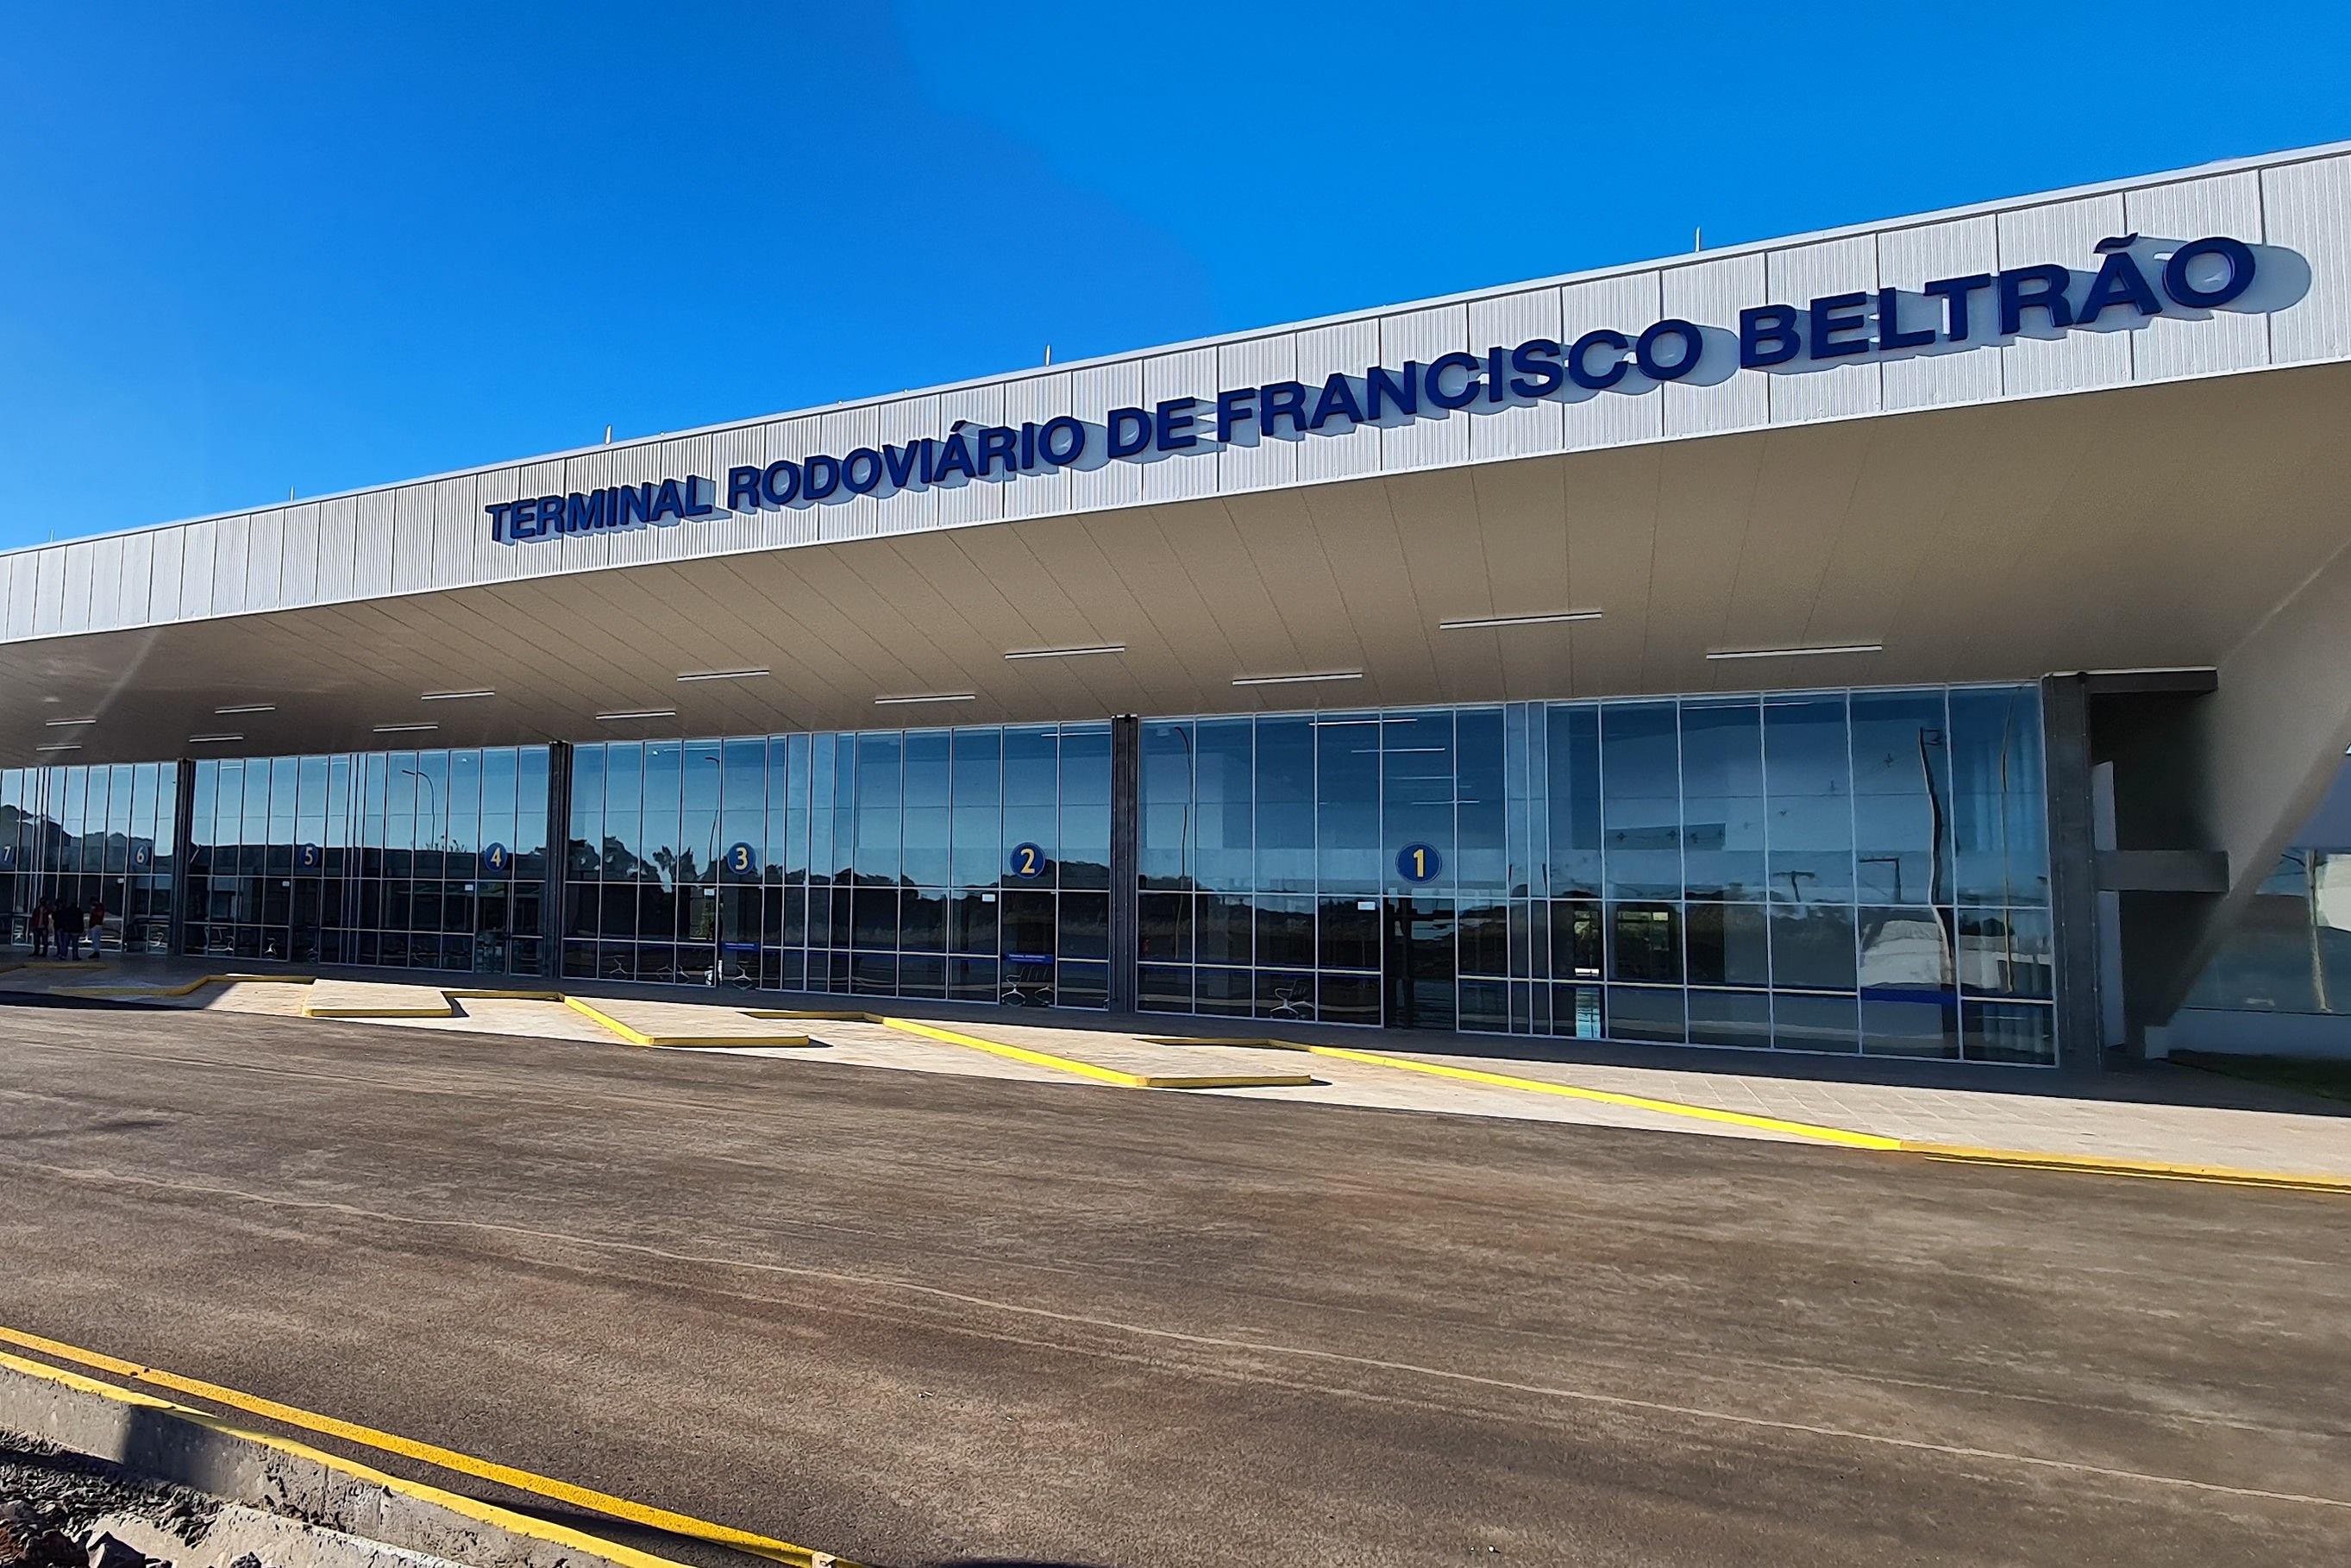 Nova rodoviária de Francisco Beltrão entra em operação